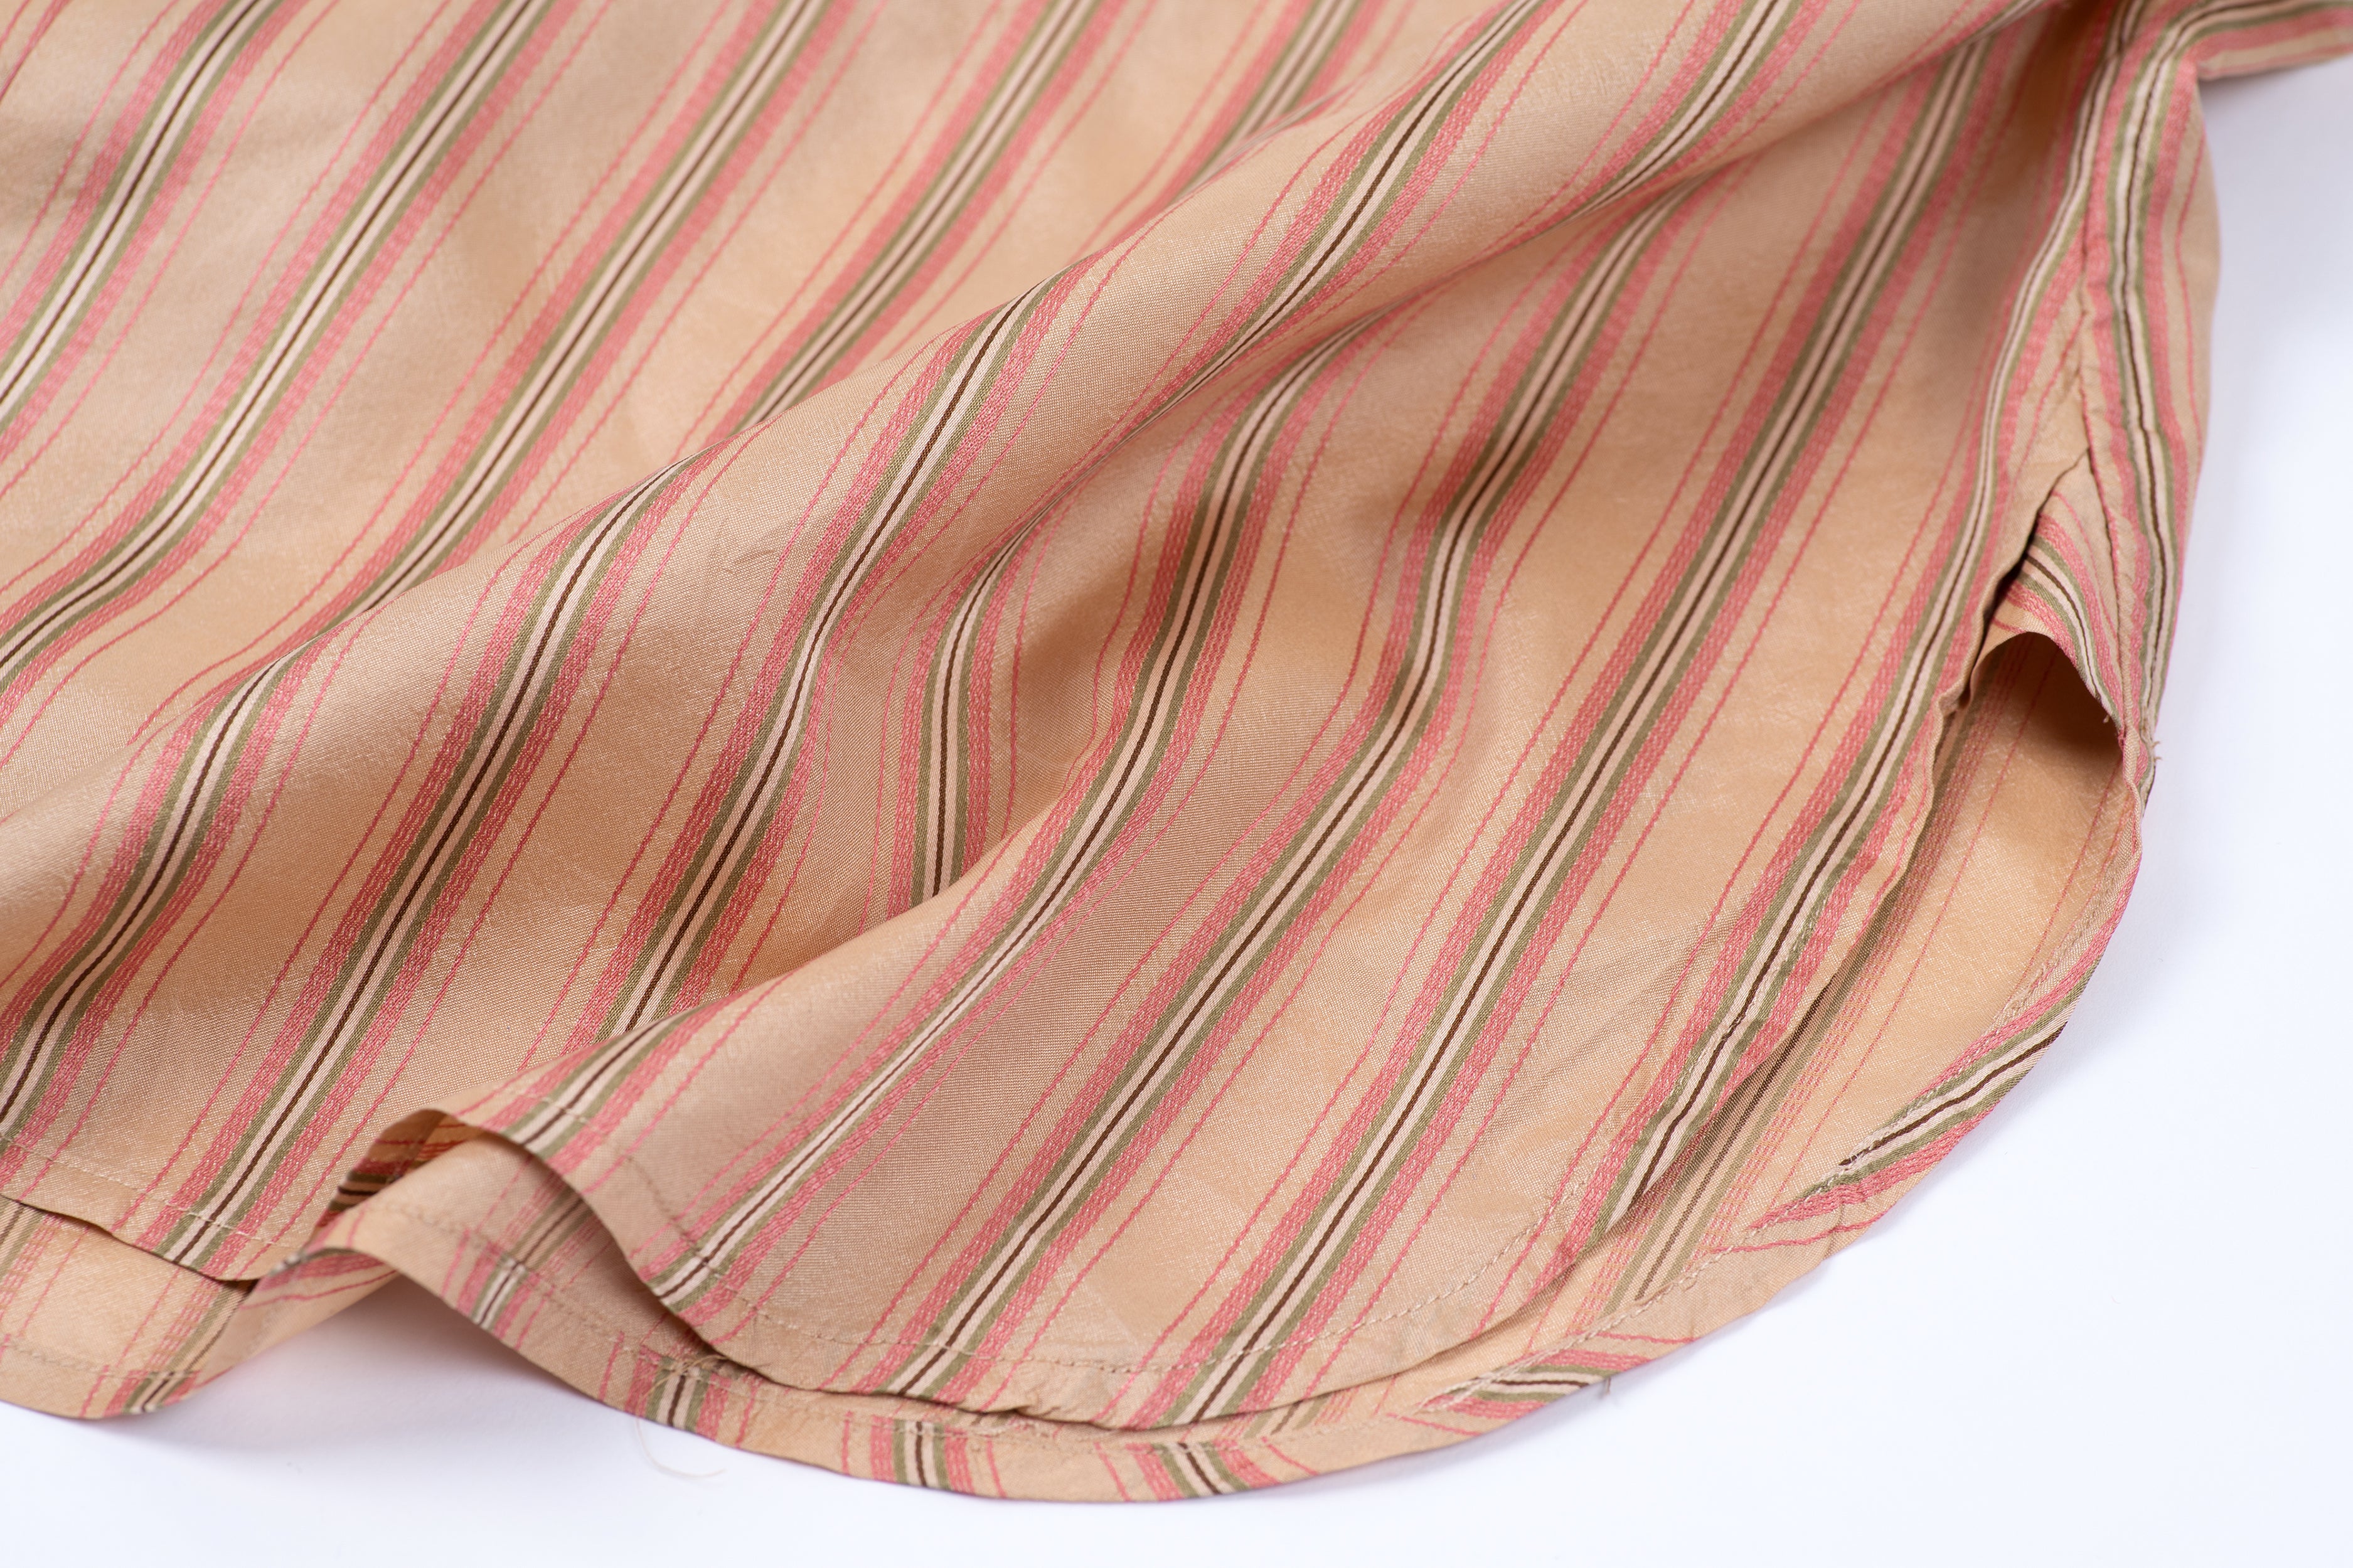 Ralph Lauren Women's Striped Silk Long Shirt in Gold, Size 4, S